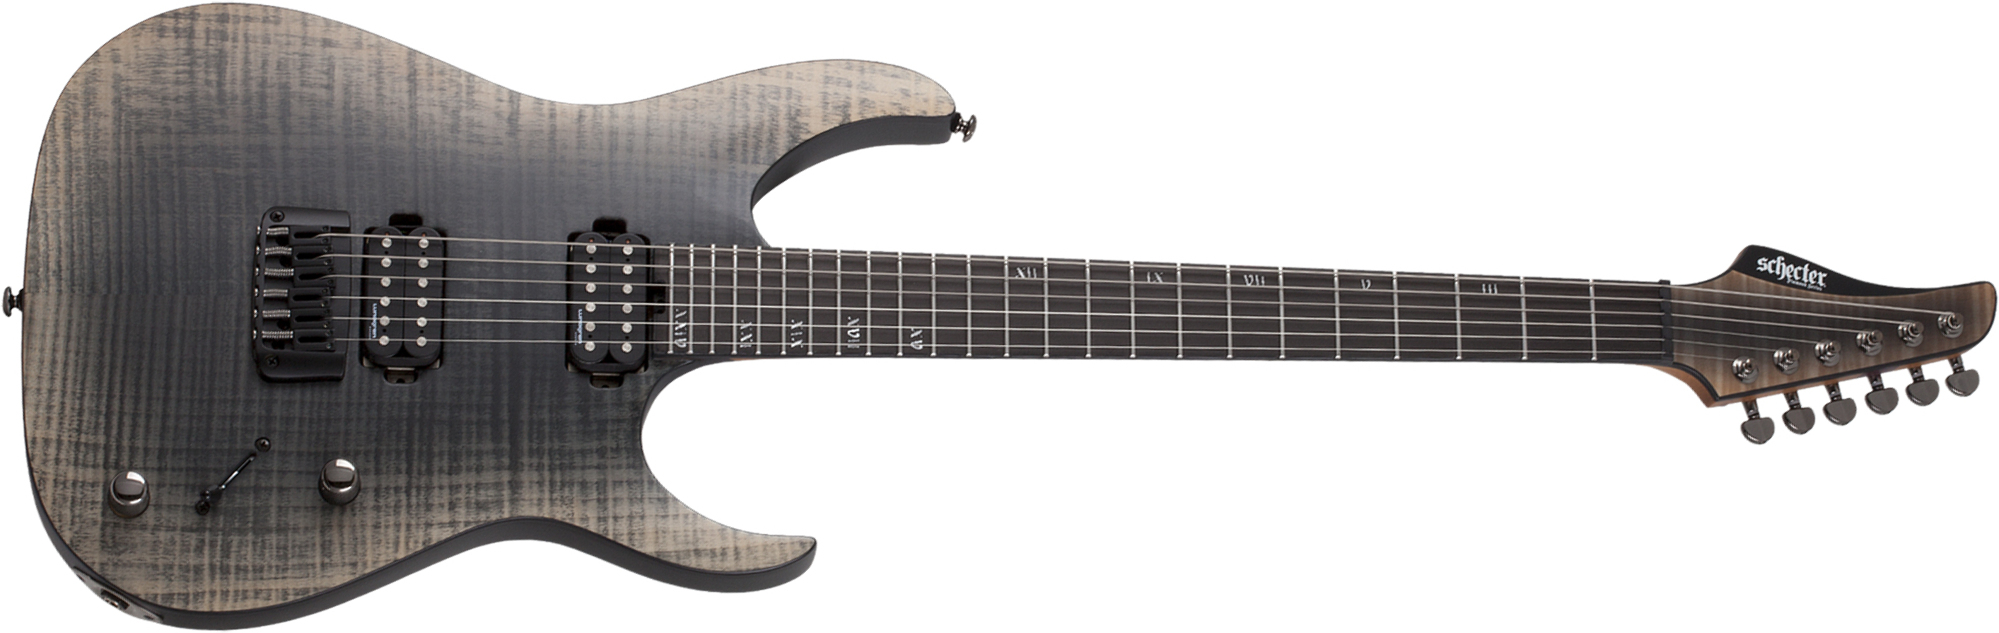 Schecter Banshee Mach-6 2h Lundgren Ht Eb - Fallout Burst - Str shape electric guitar - Main picture